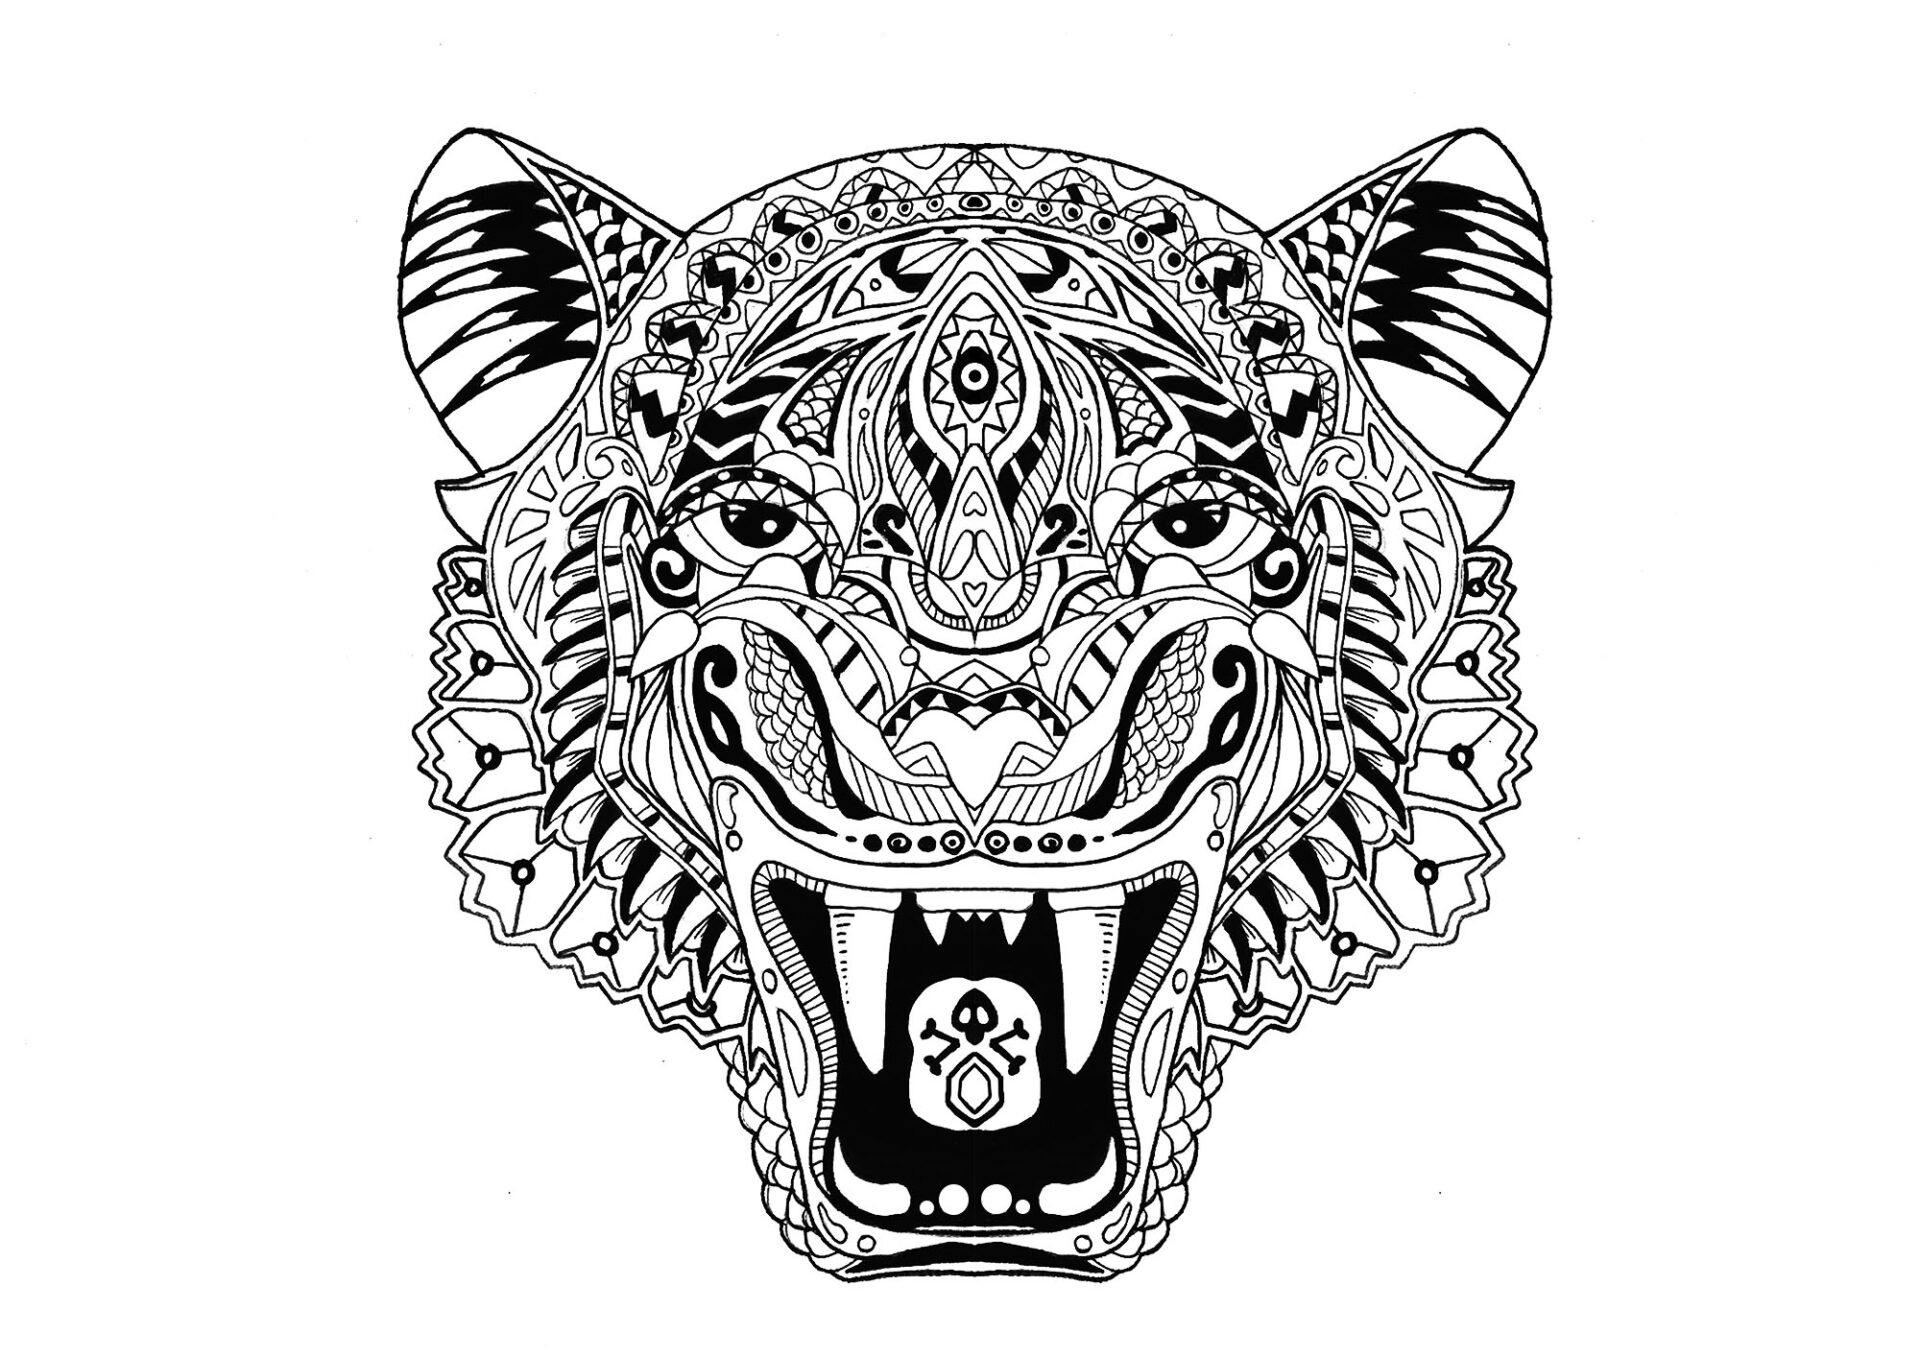 Mandala tygrys